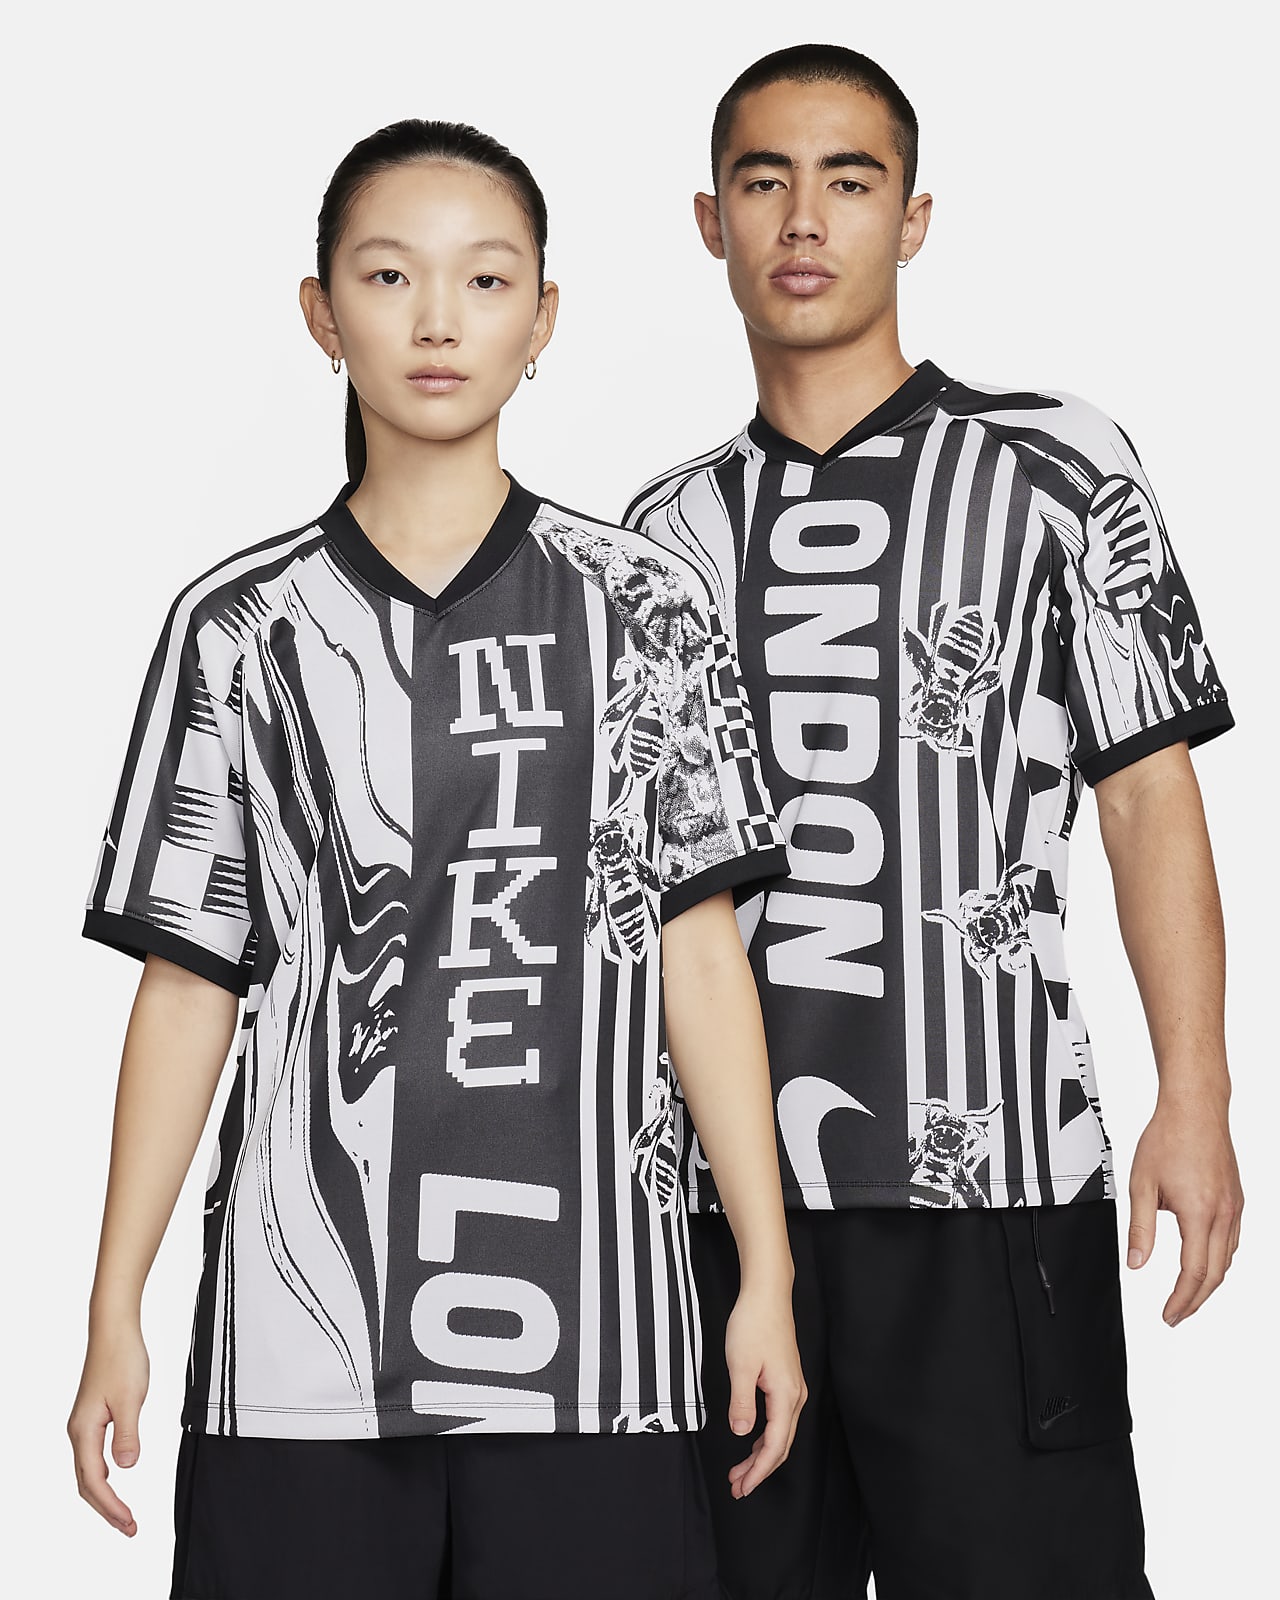 Nike Culture of Football Dri-FIT 男子速干短袖足球球衣